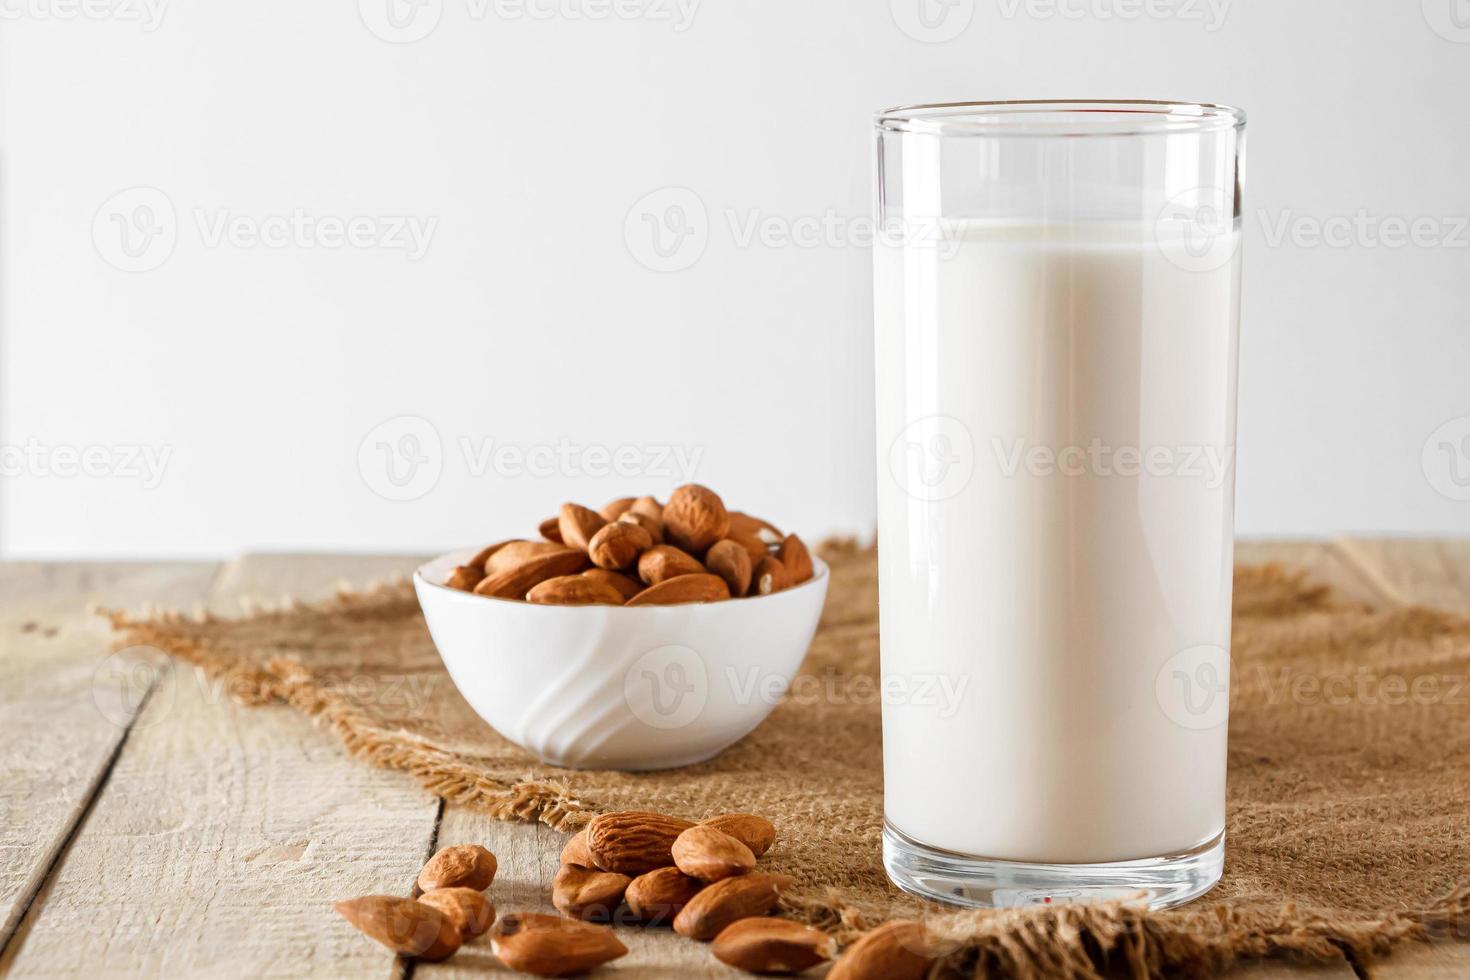 super aliment - un verre de lait d'amande pour une alimentation saine. nourriture tendance, photo verticale. place pour votre texte.